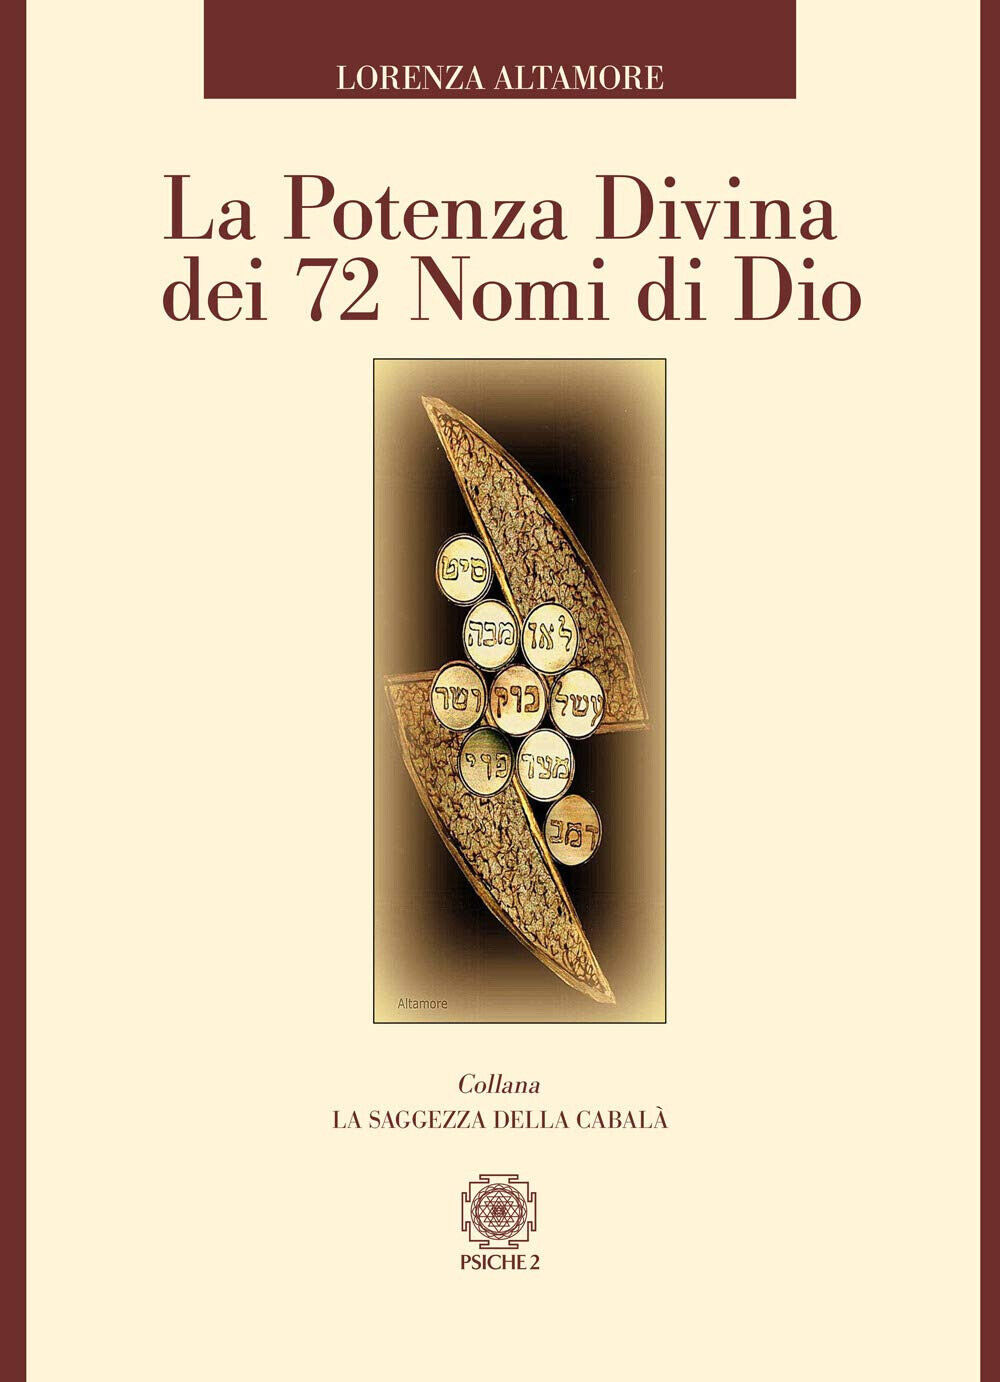 La potenza divina dei 72 nomi di Dio - Lorenza Altamore - Psiche 2, 2020 libro usato